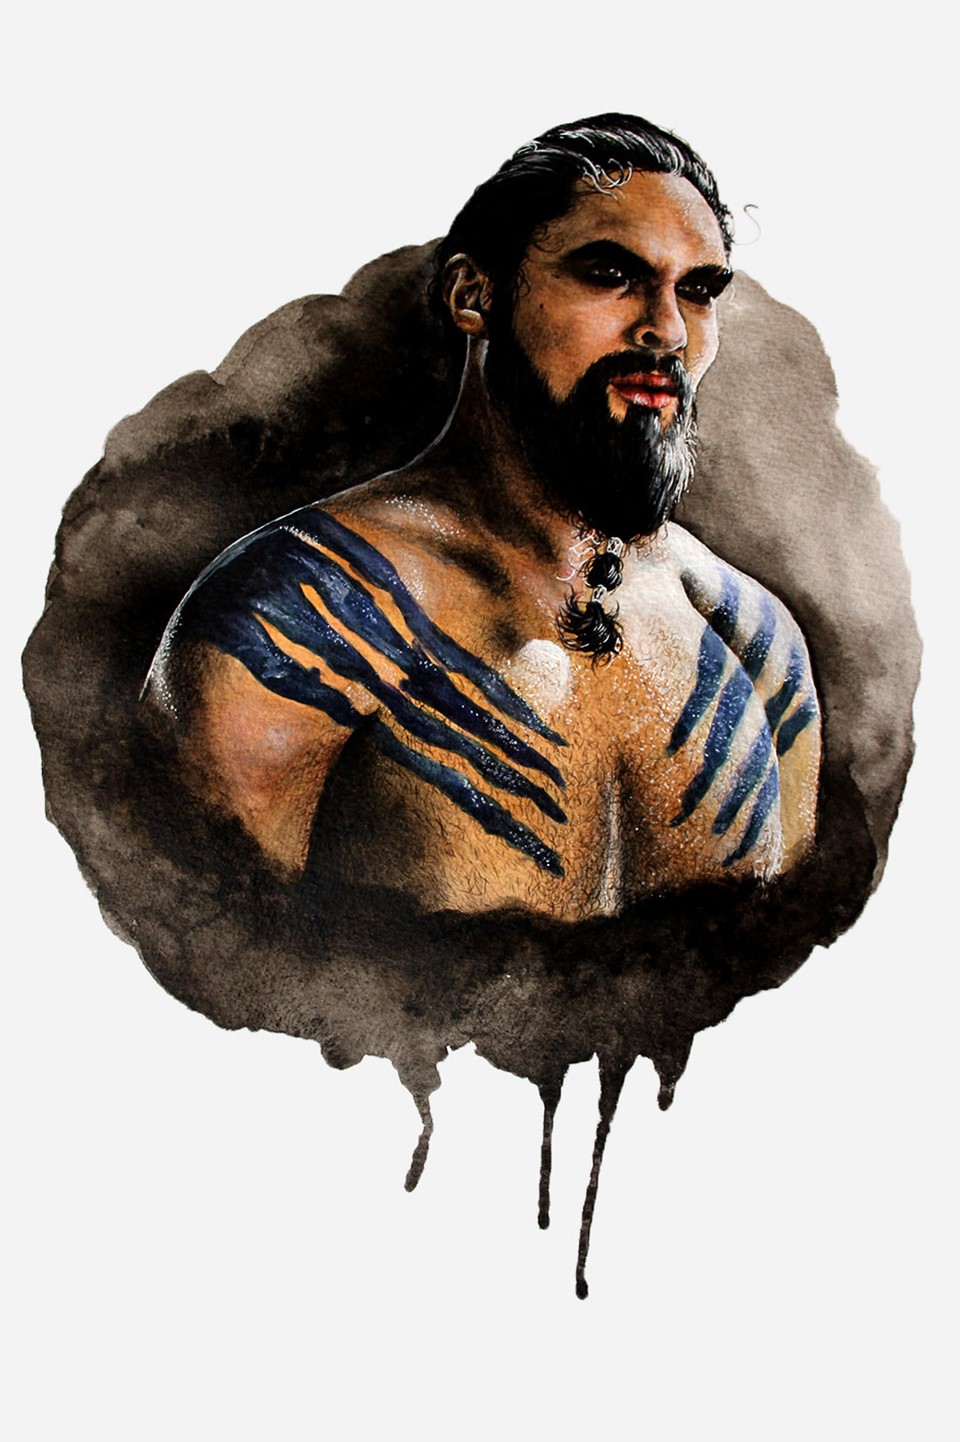 Khal Drogo fan art by Holly Khraibani